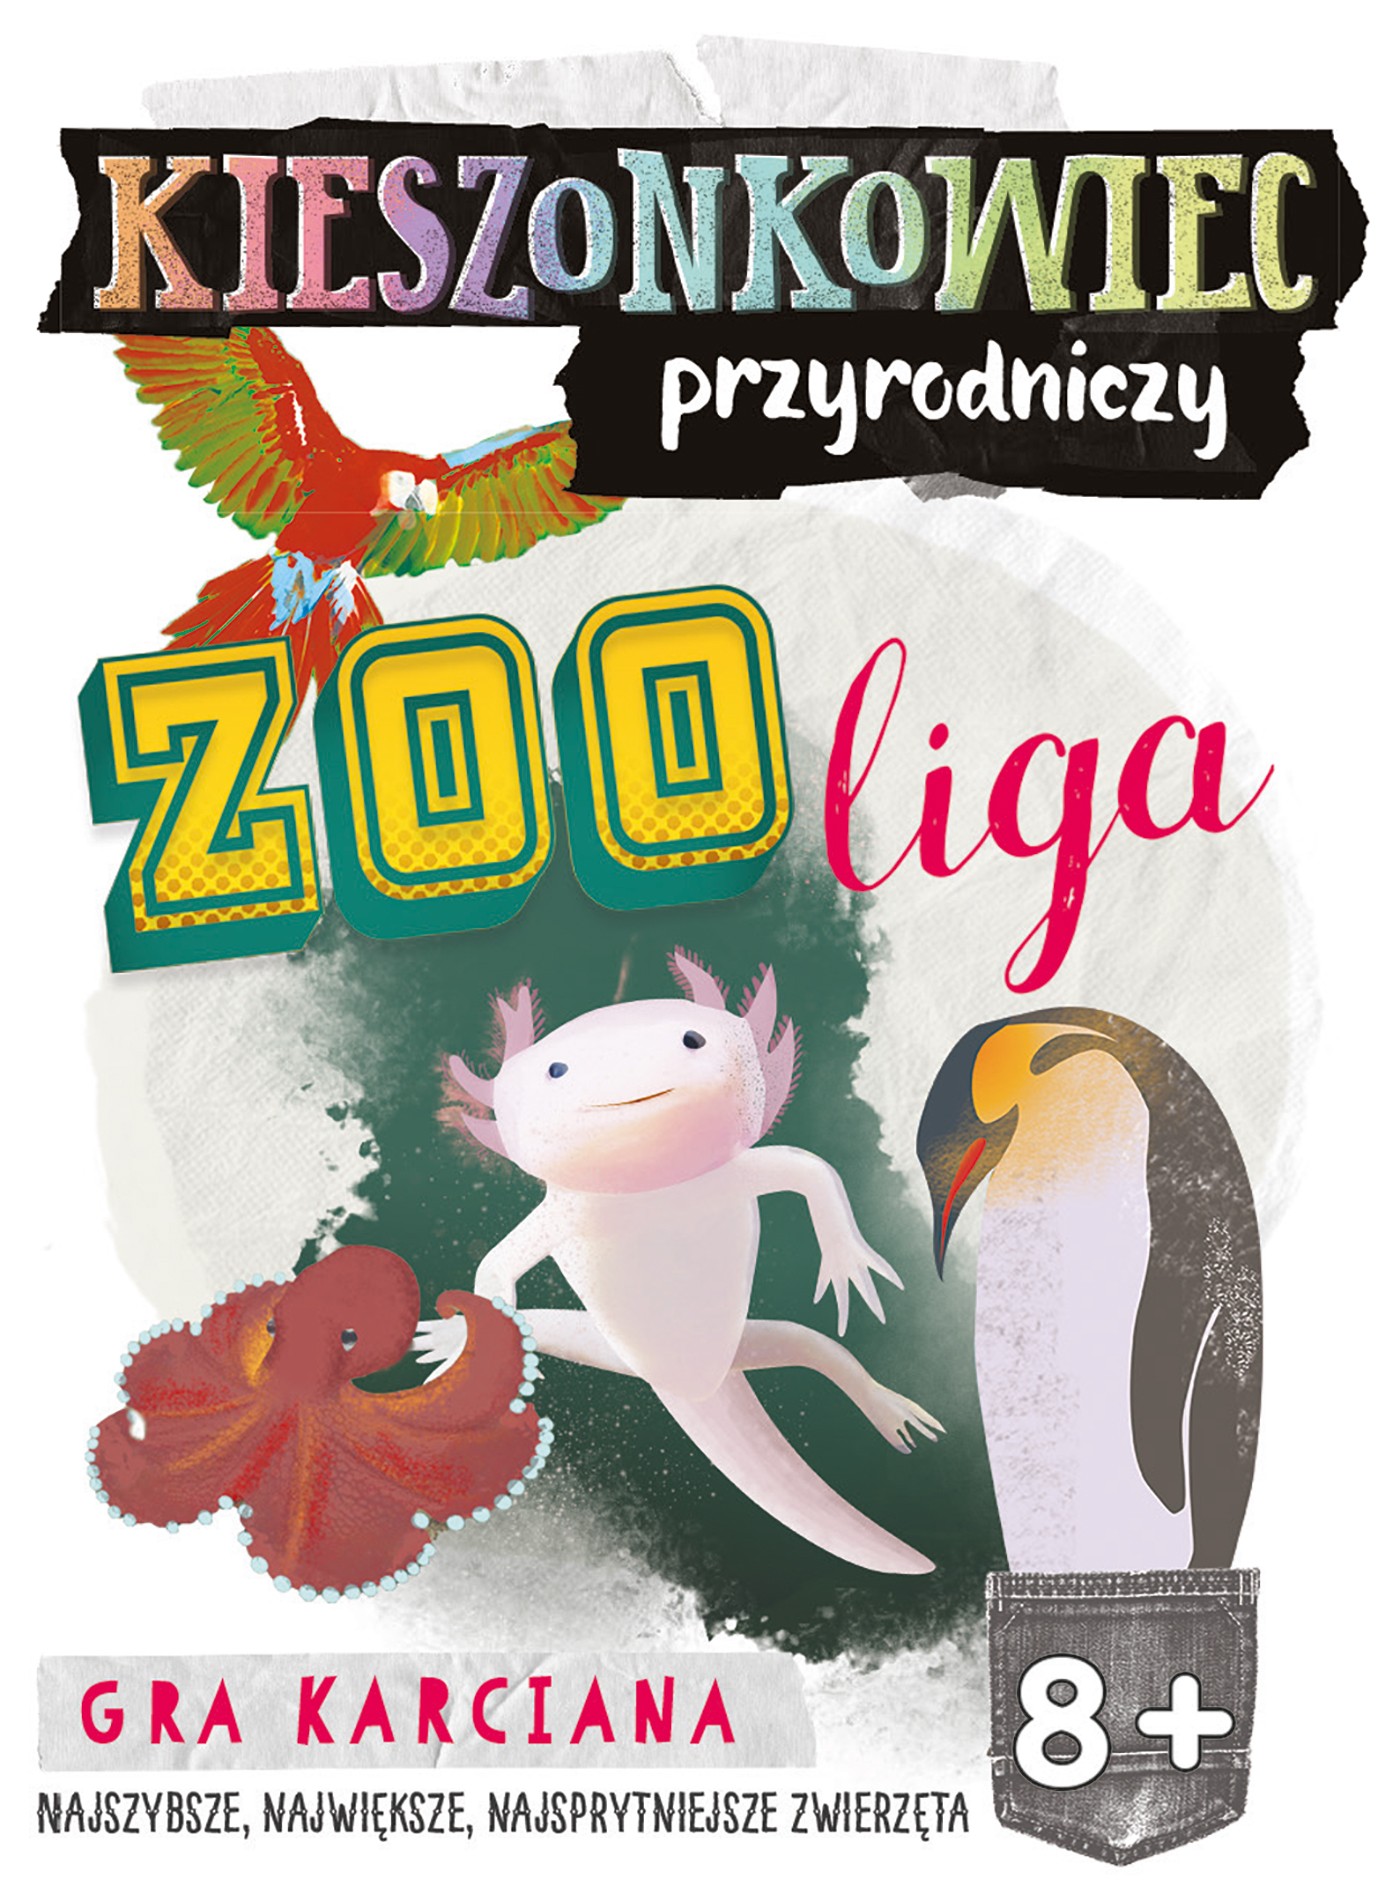 Gra kieszonkowiec przyrodniczy zoo liga